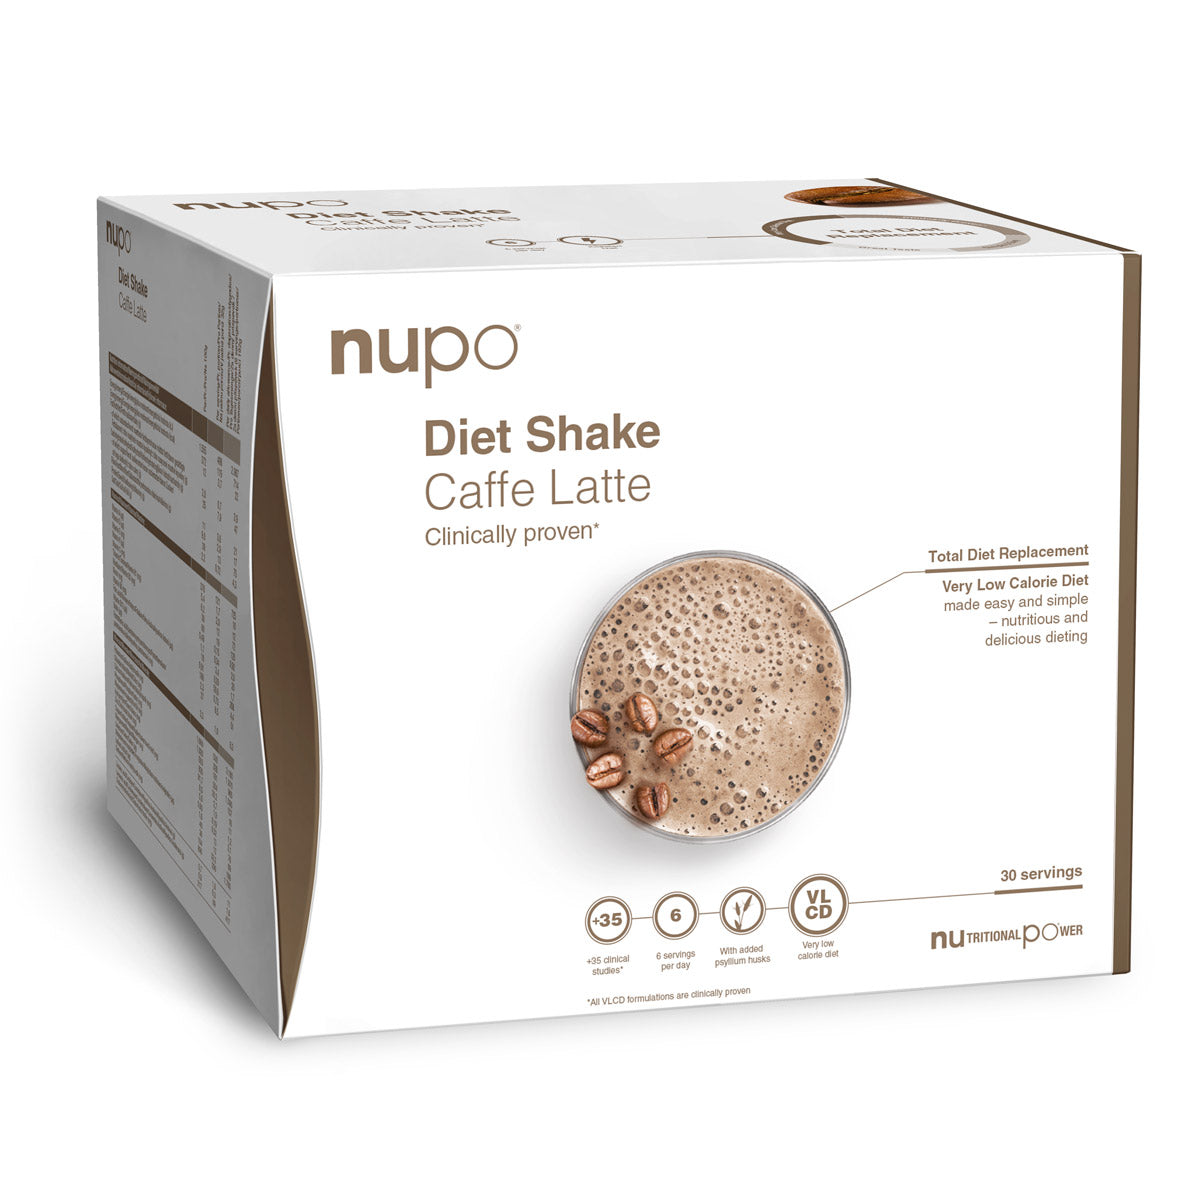 Billede af Nupo Diet Shake Value Pack (960g) - Caffe Latte